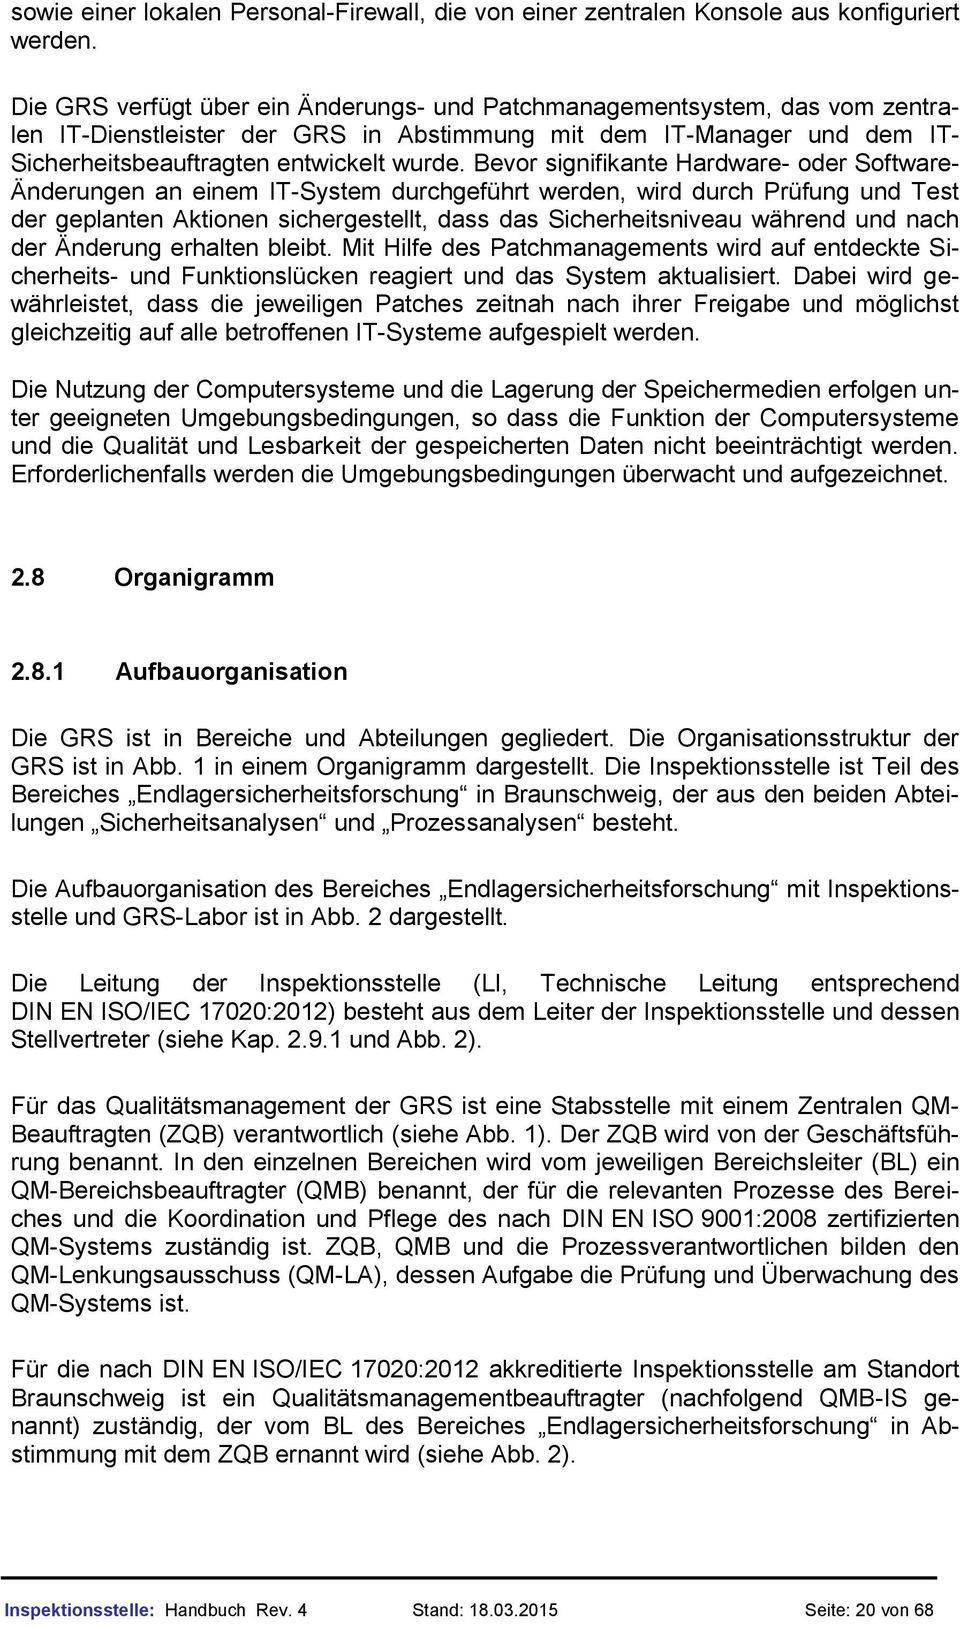 Handbuch Der Inspektionsstelle Der Grs Stand Pdf Kostenfreier Download